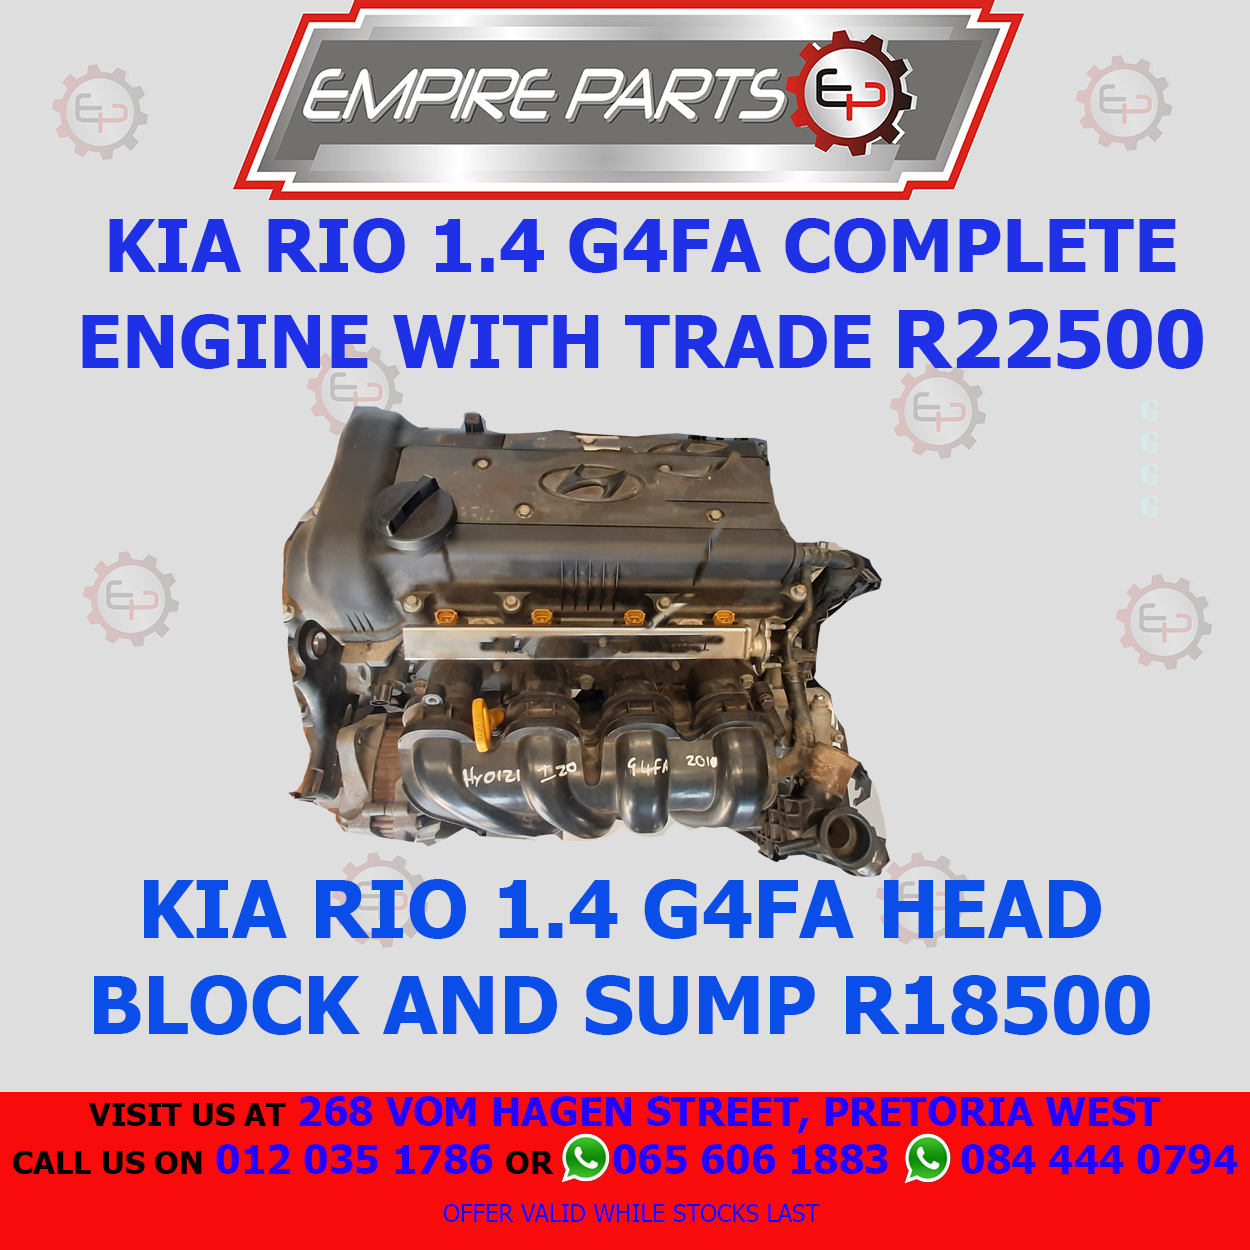 Kia Rio G4Fa Complete Engine with trade